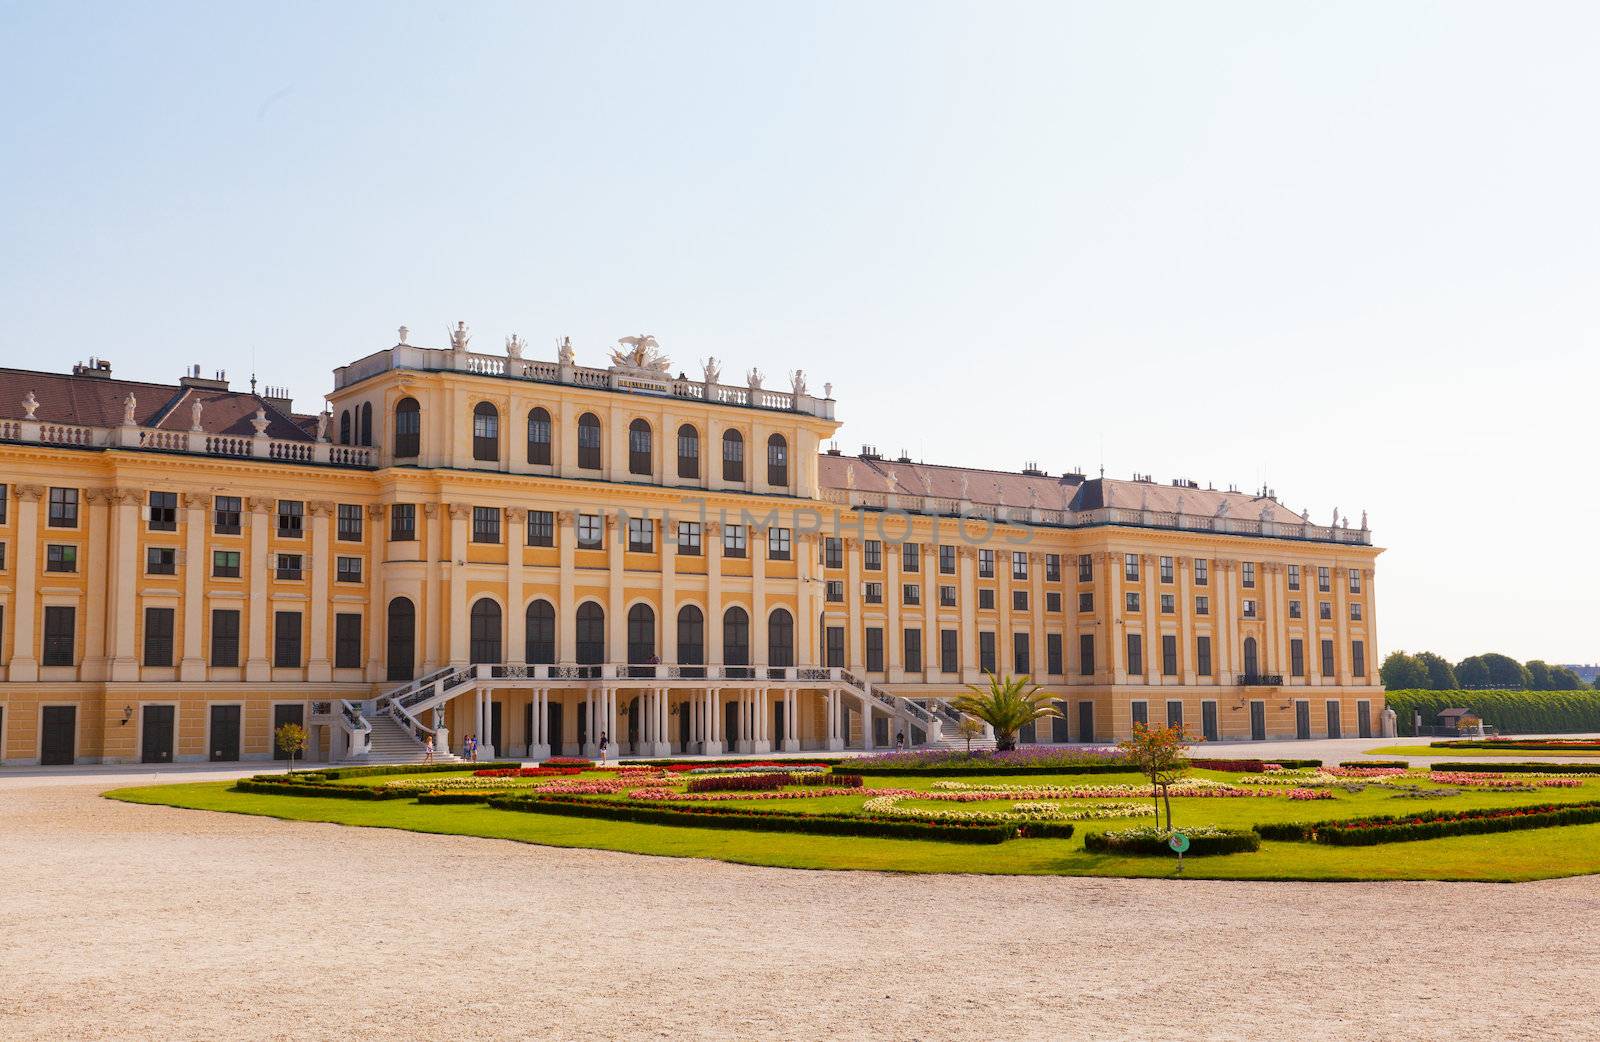 Schonbrunn palace in Vienna Austria by elena_shchipkova